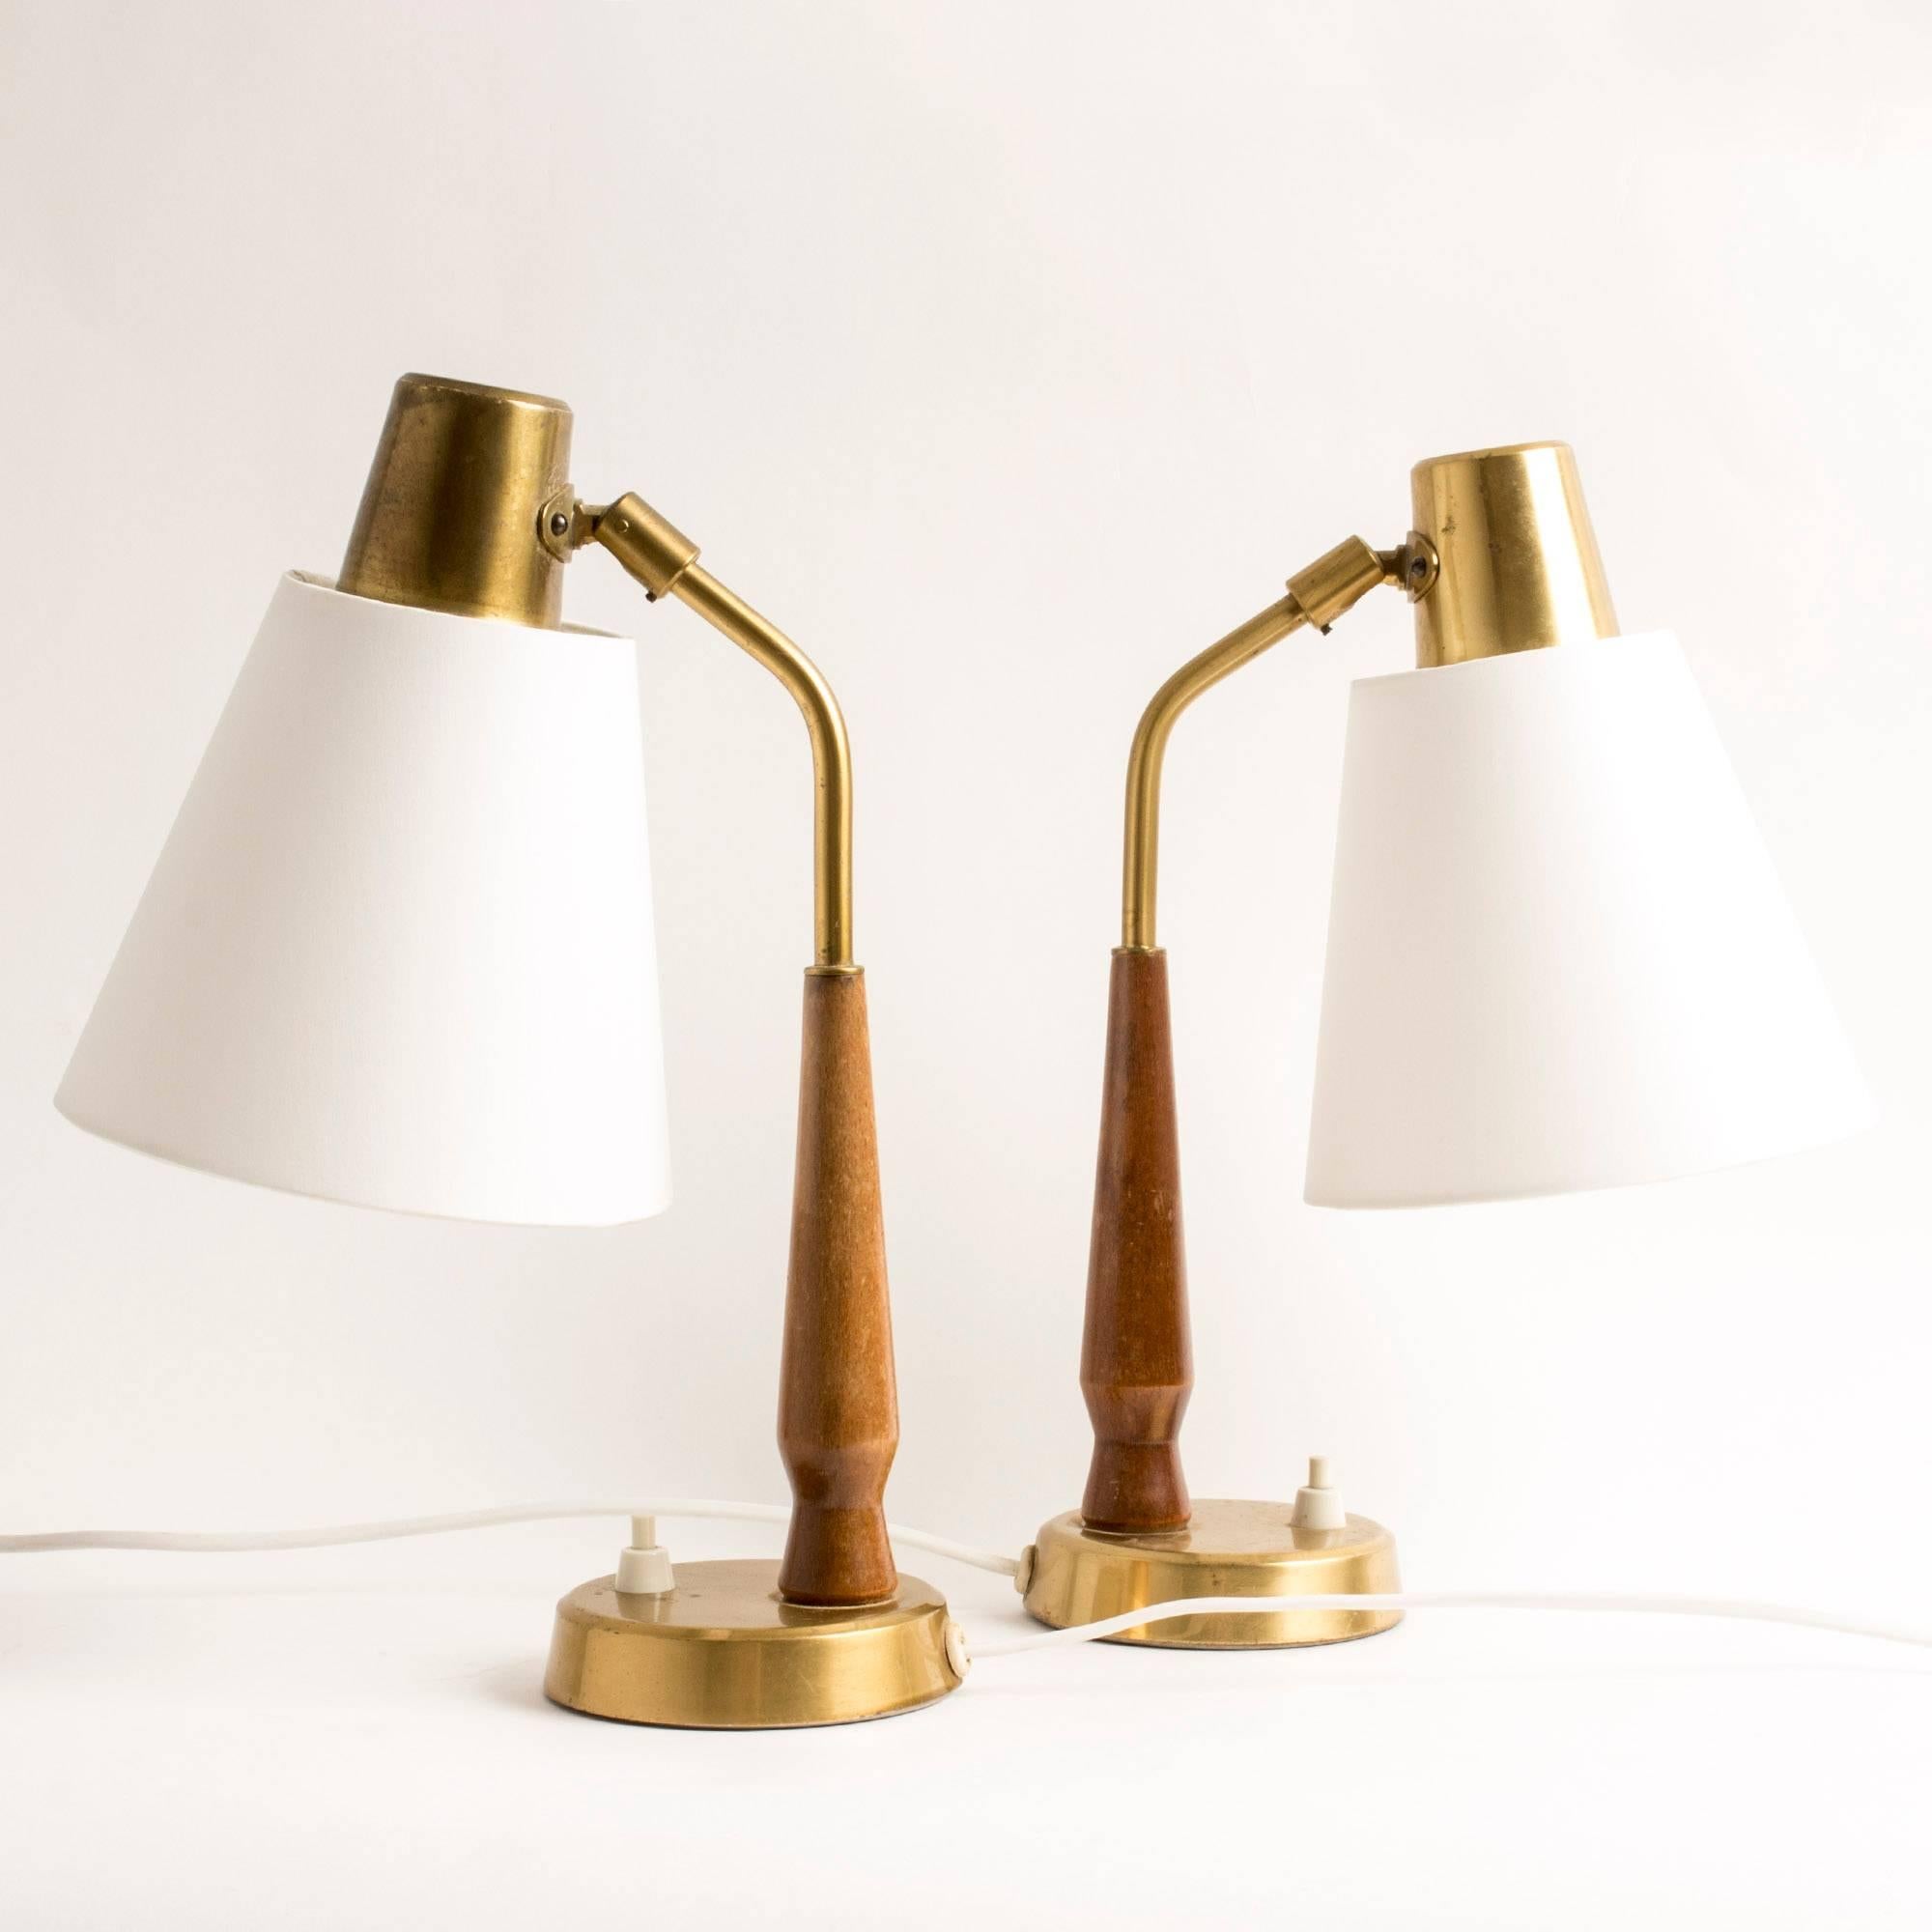 Scandinavian Modern Pair of Teak and Brass Table Lamps by Hans Bergström